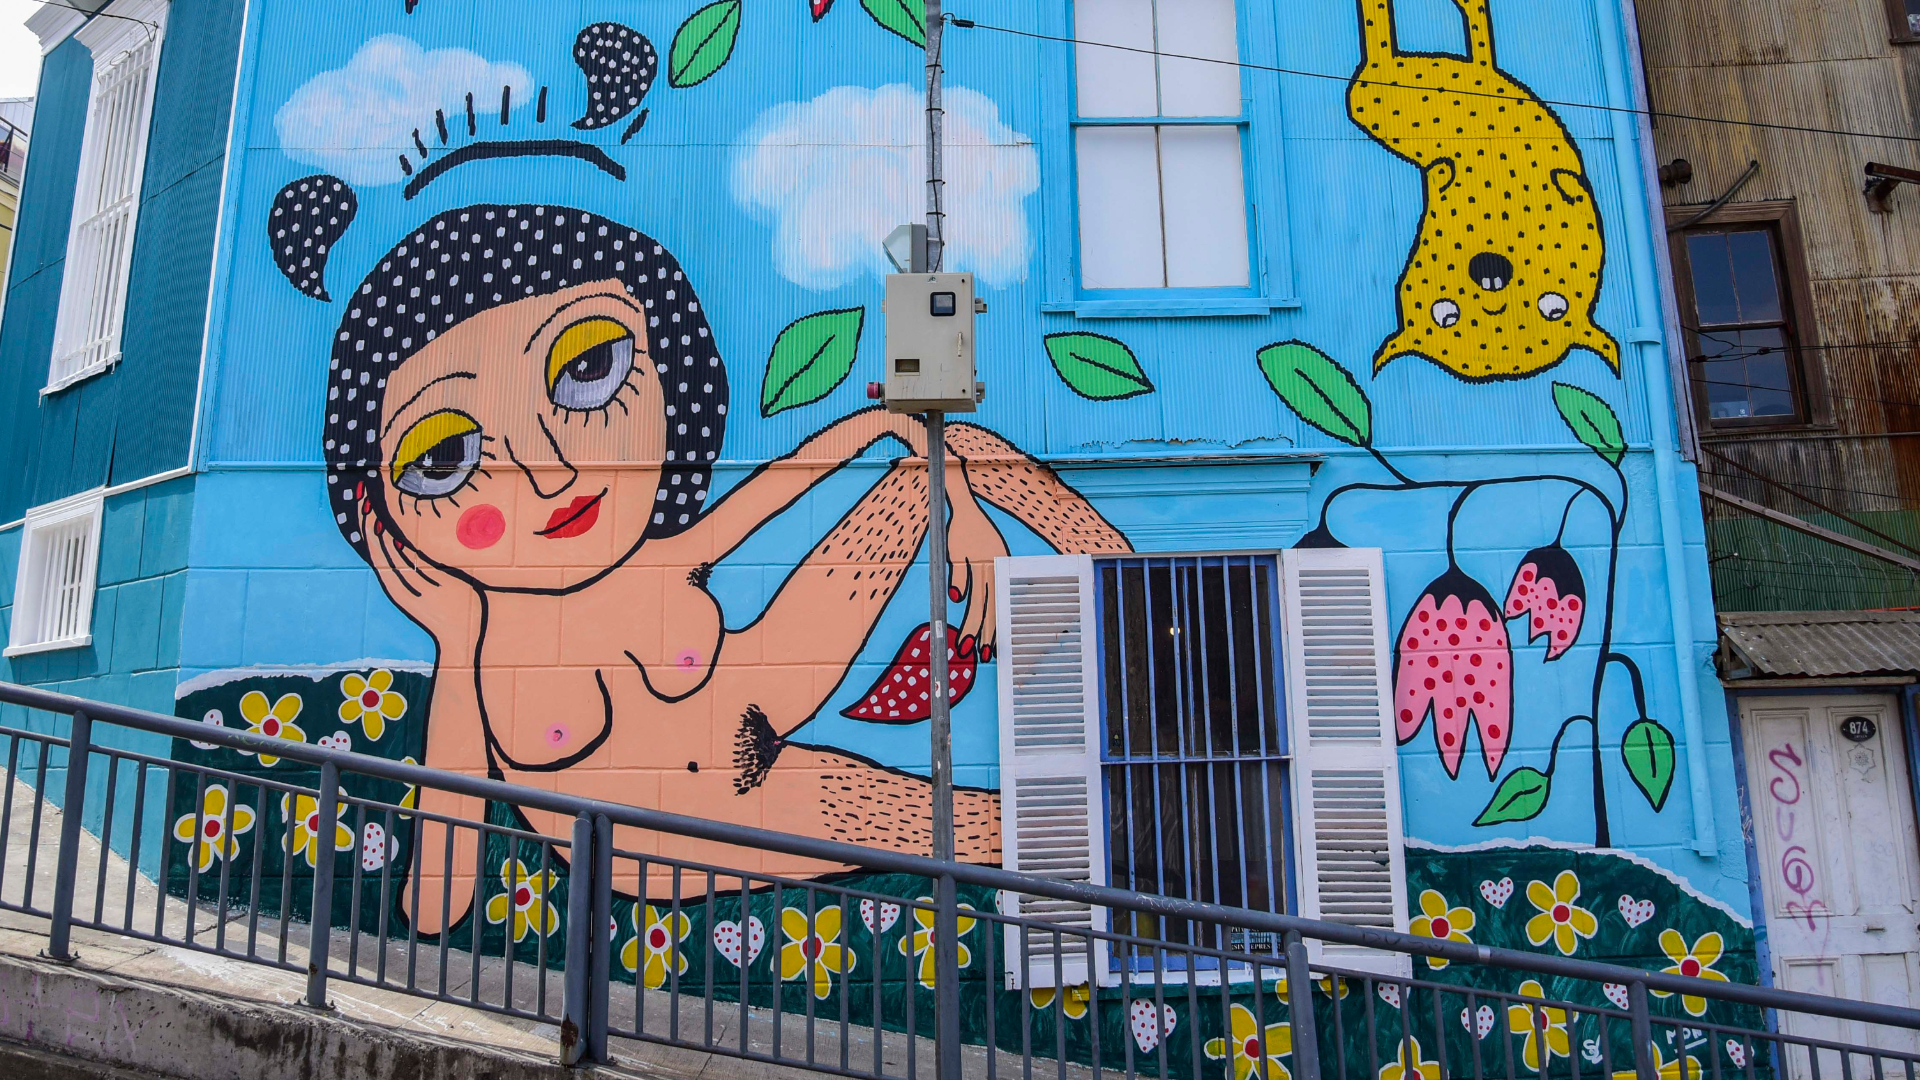 Mural de Mon Laferte en Valparaíso